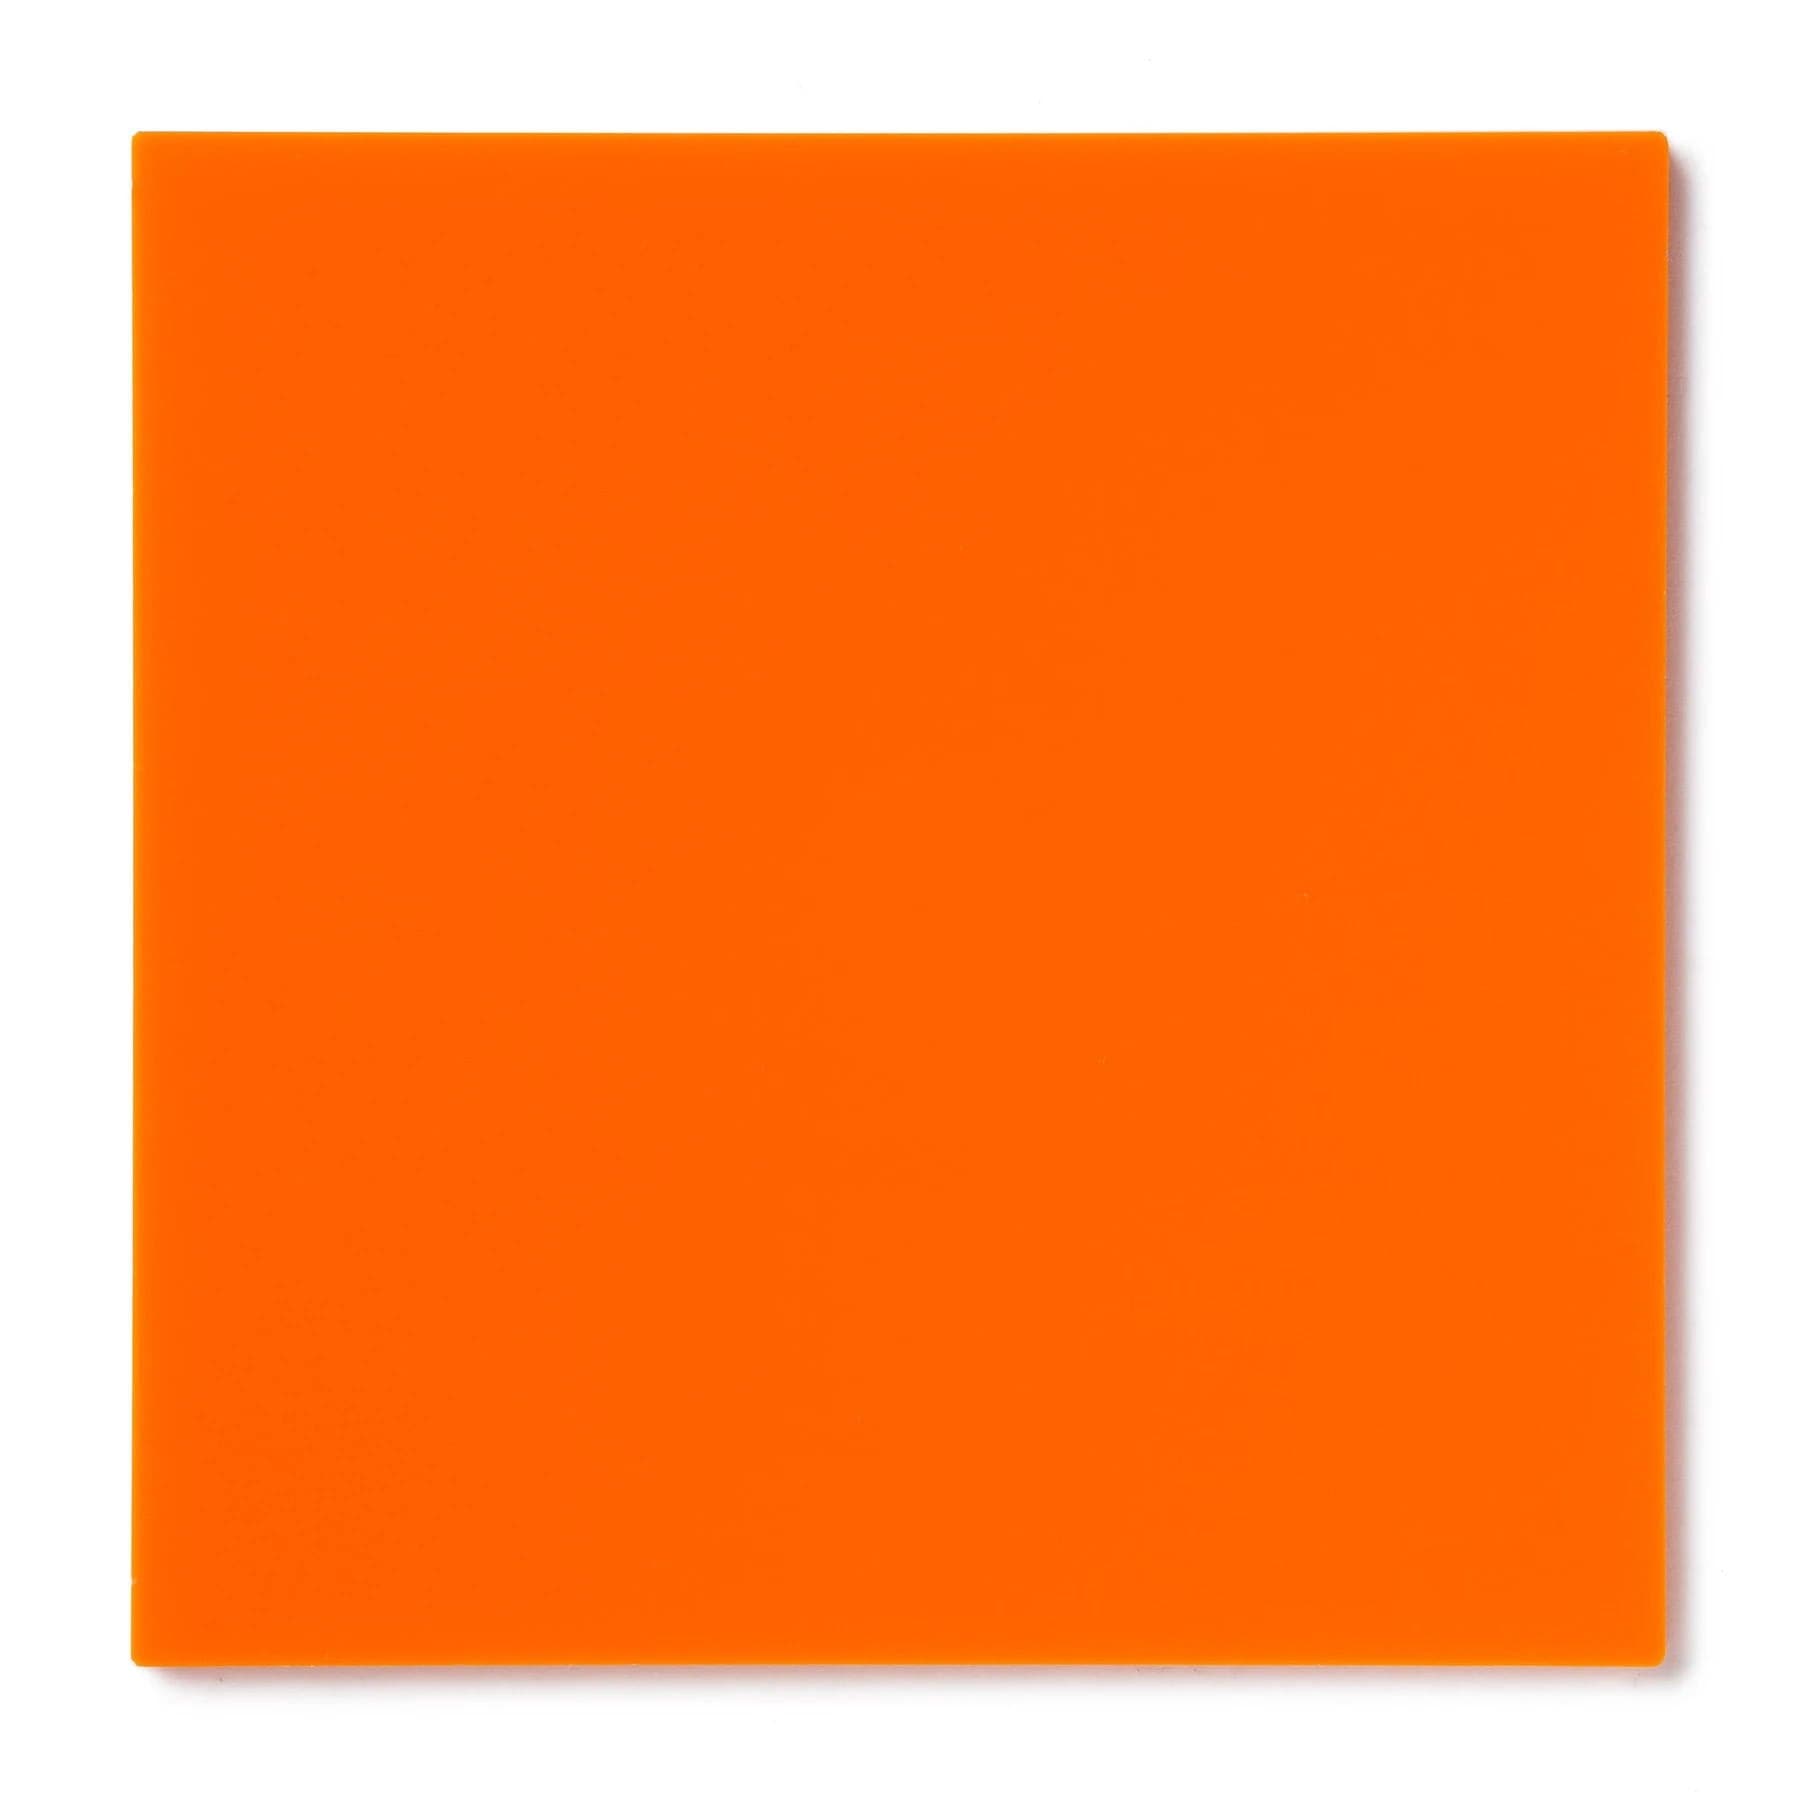 Acrylic Sheet 1/8" Orange Opaque #2119